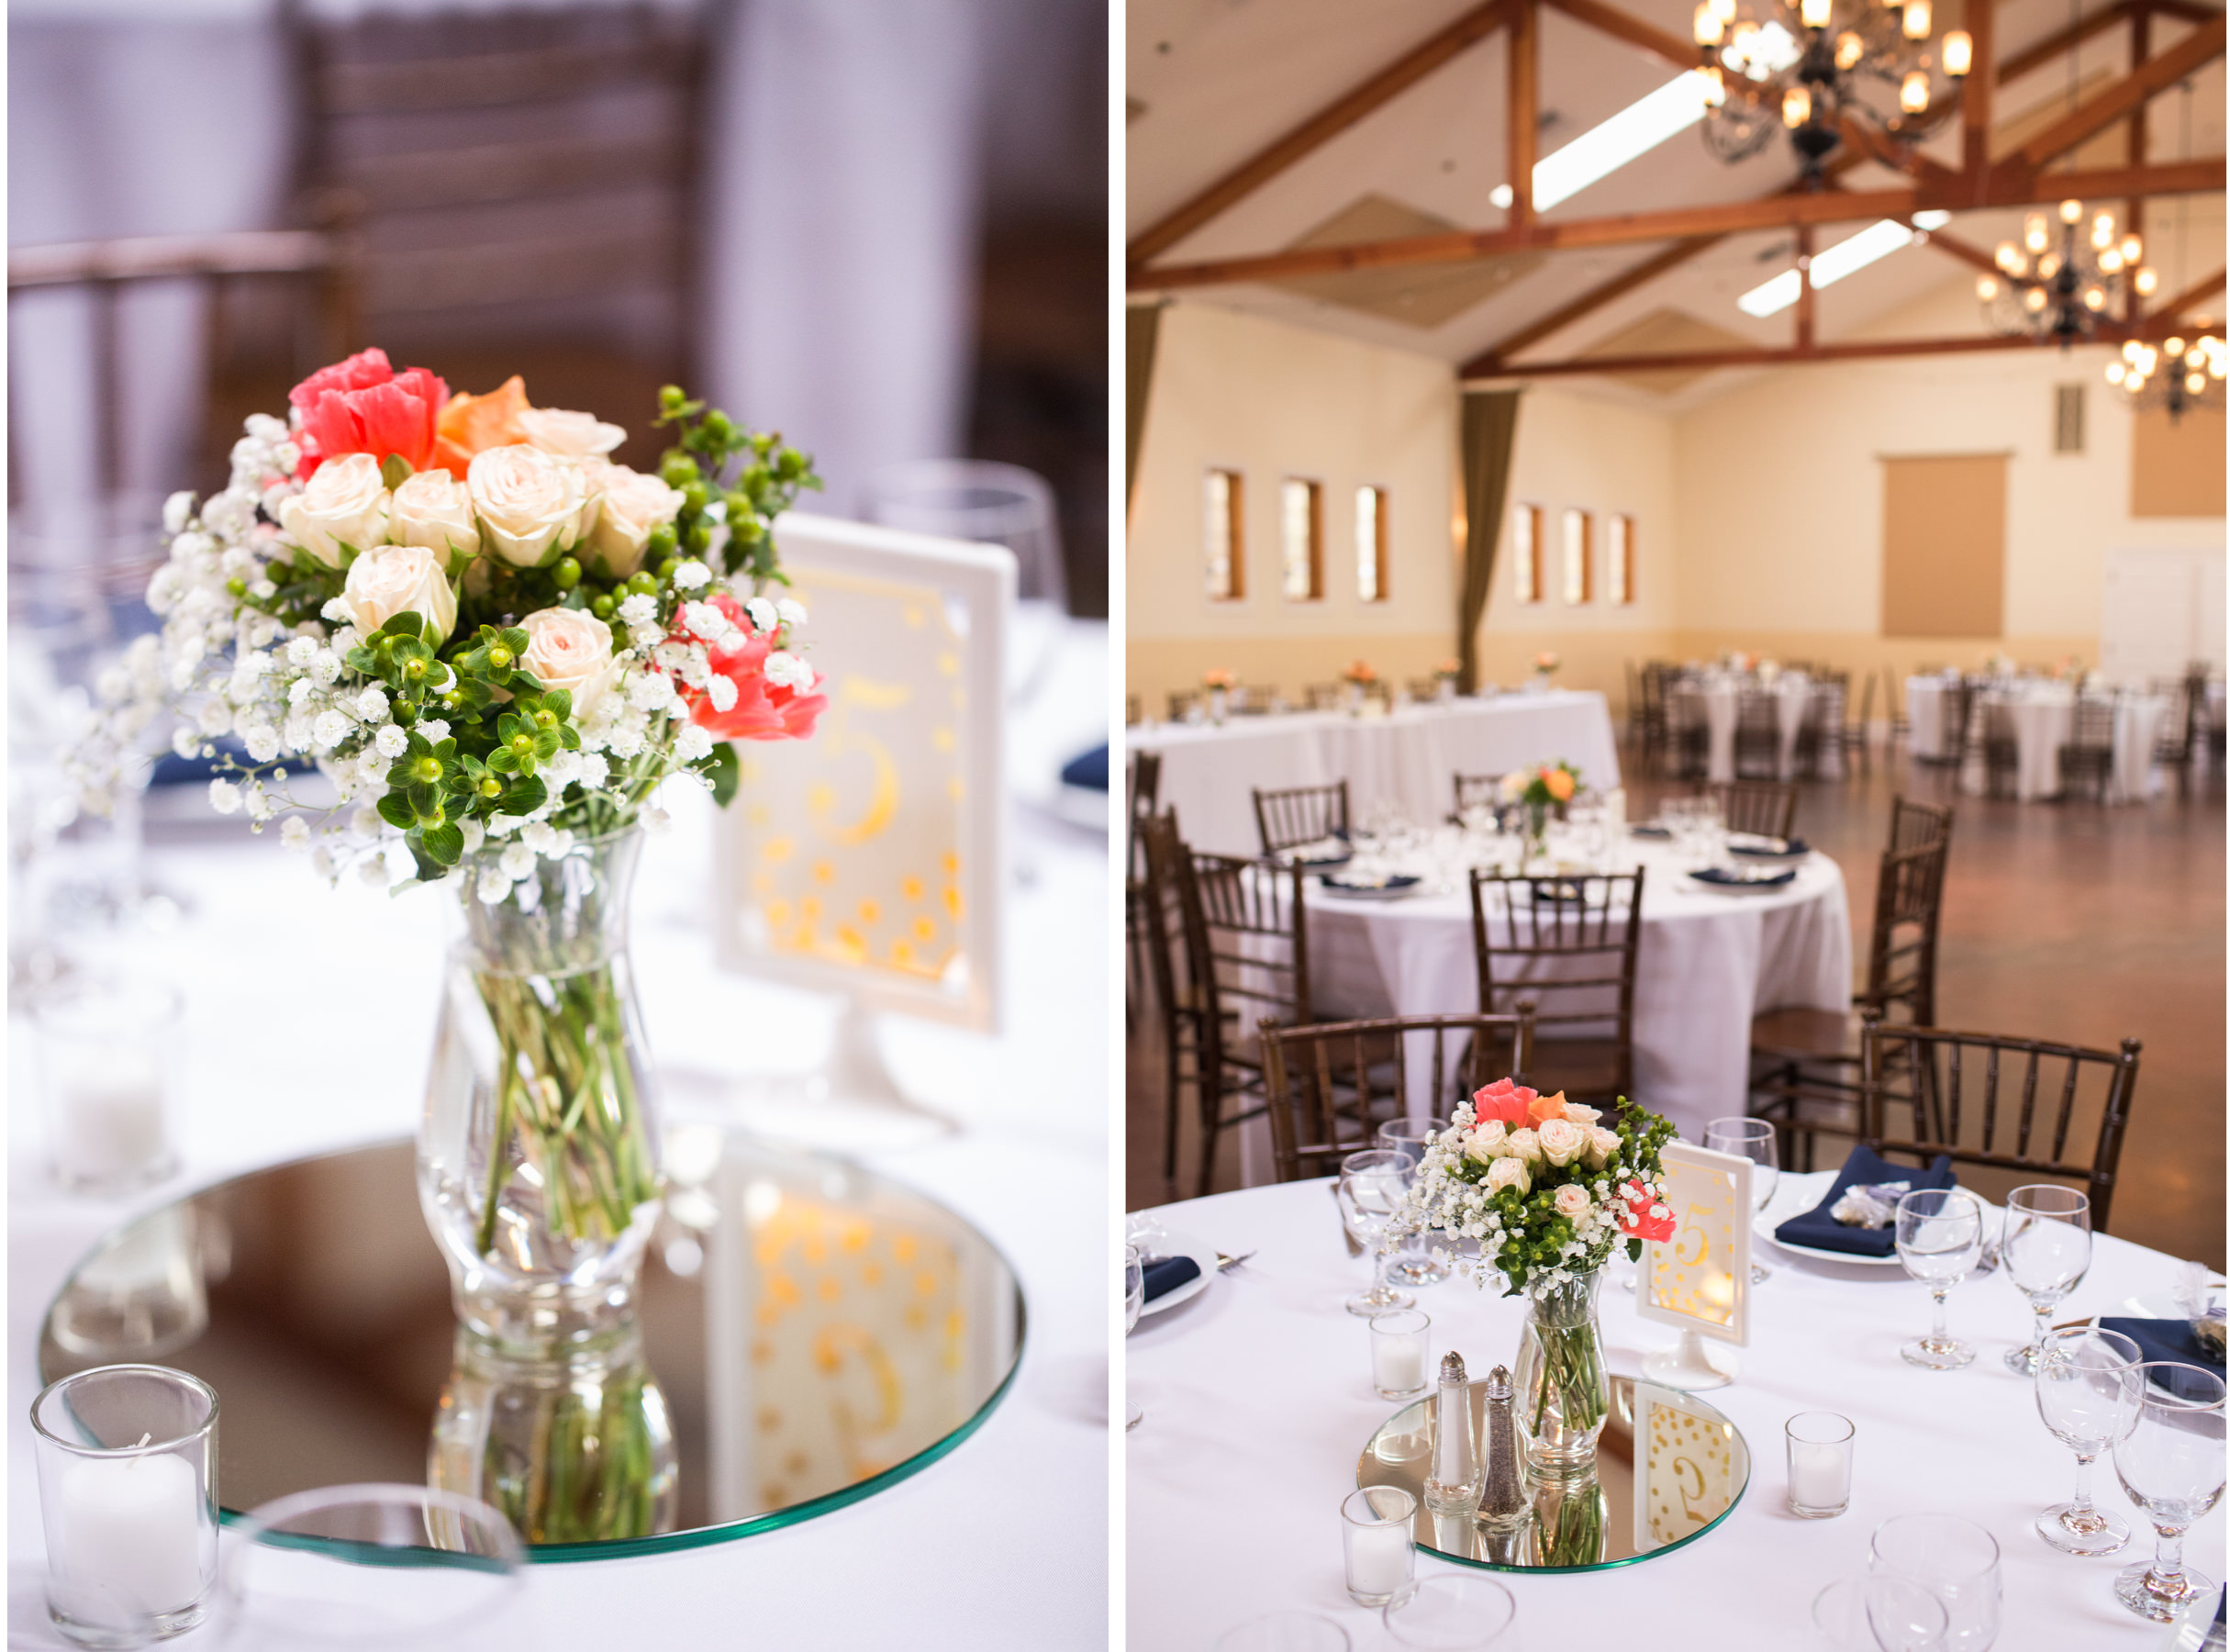 Loomis Flower Farm Wedding Reception Details